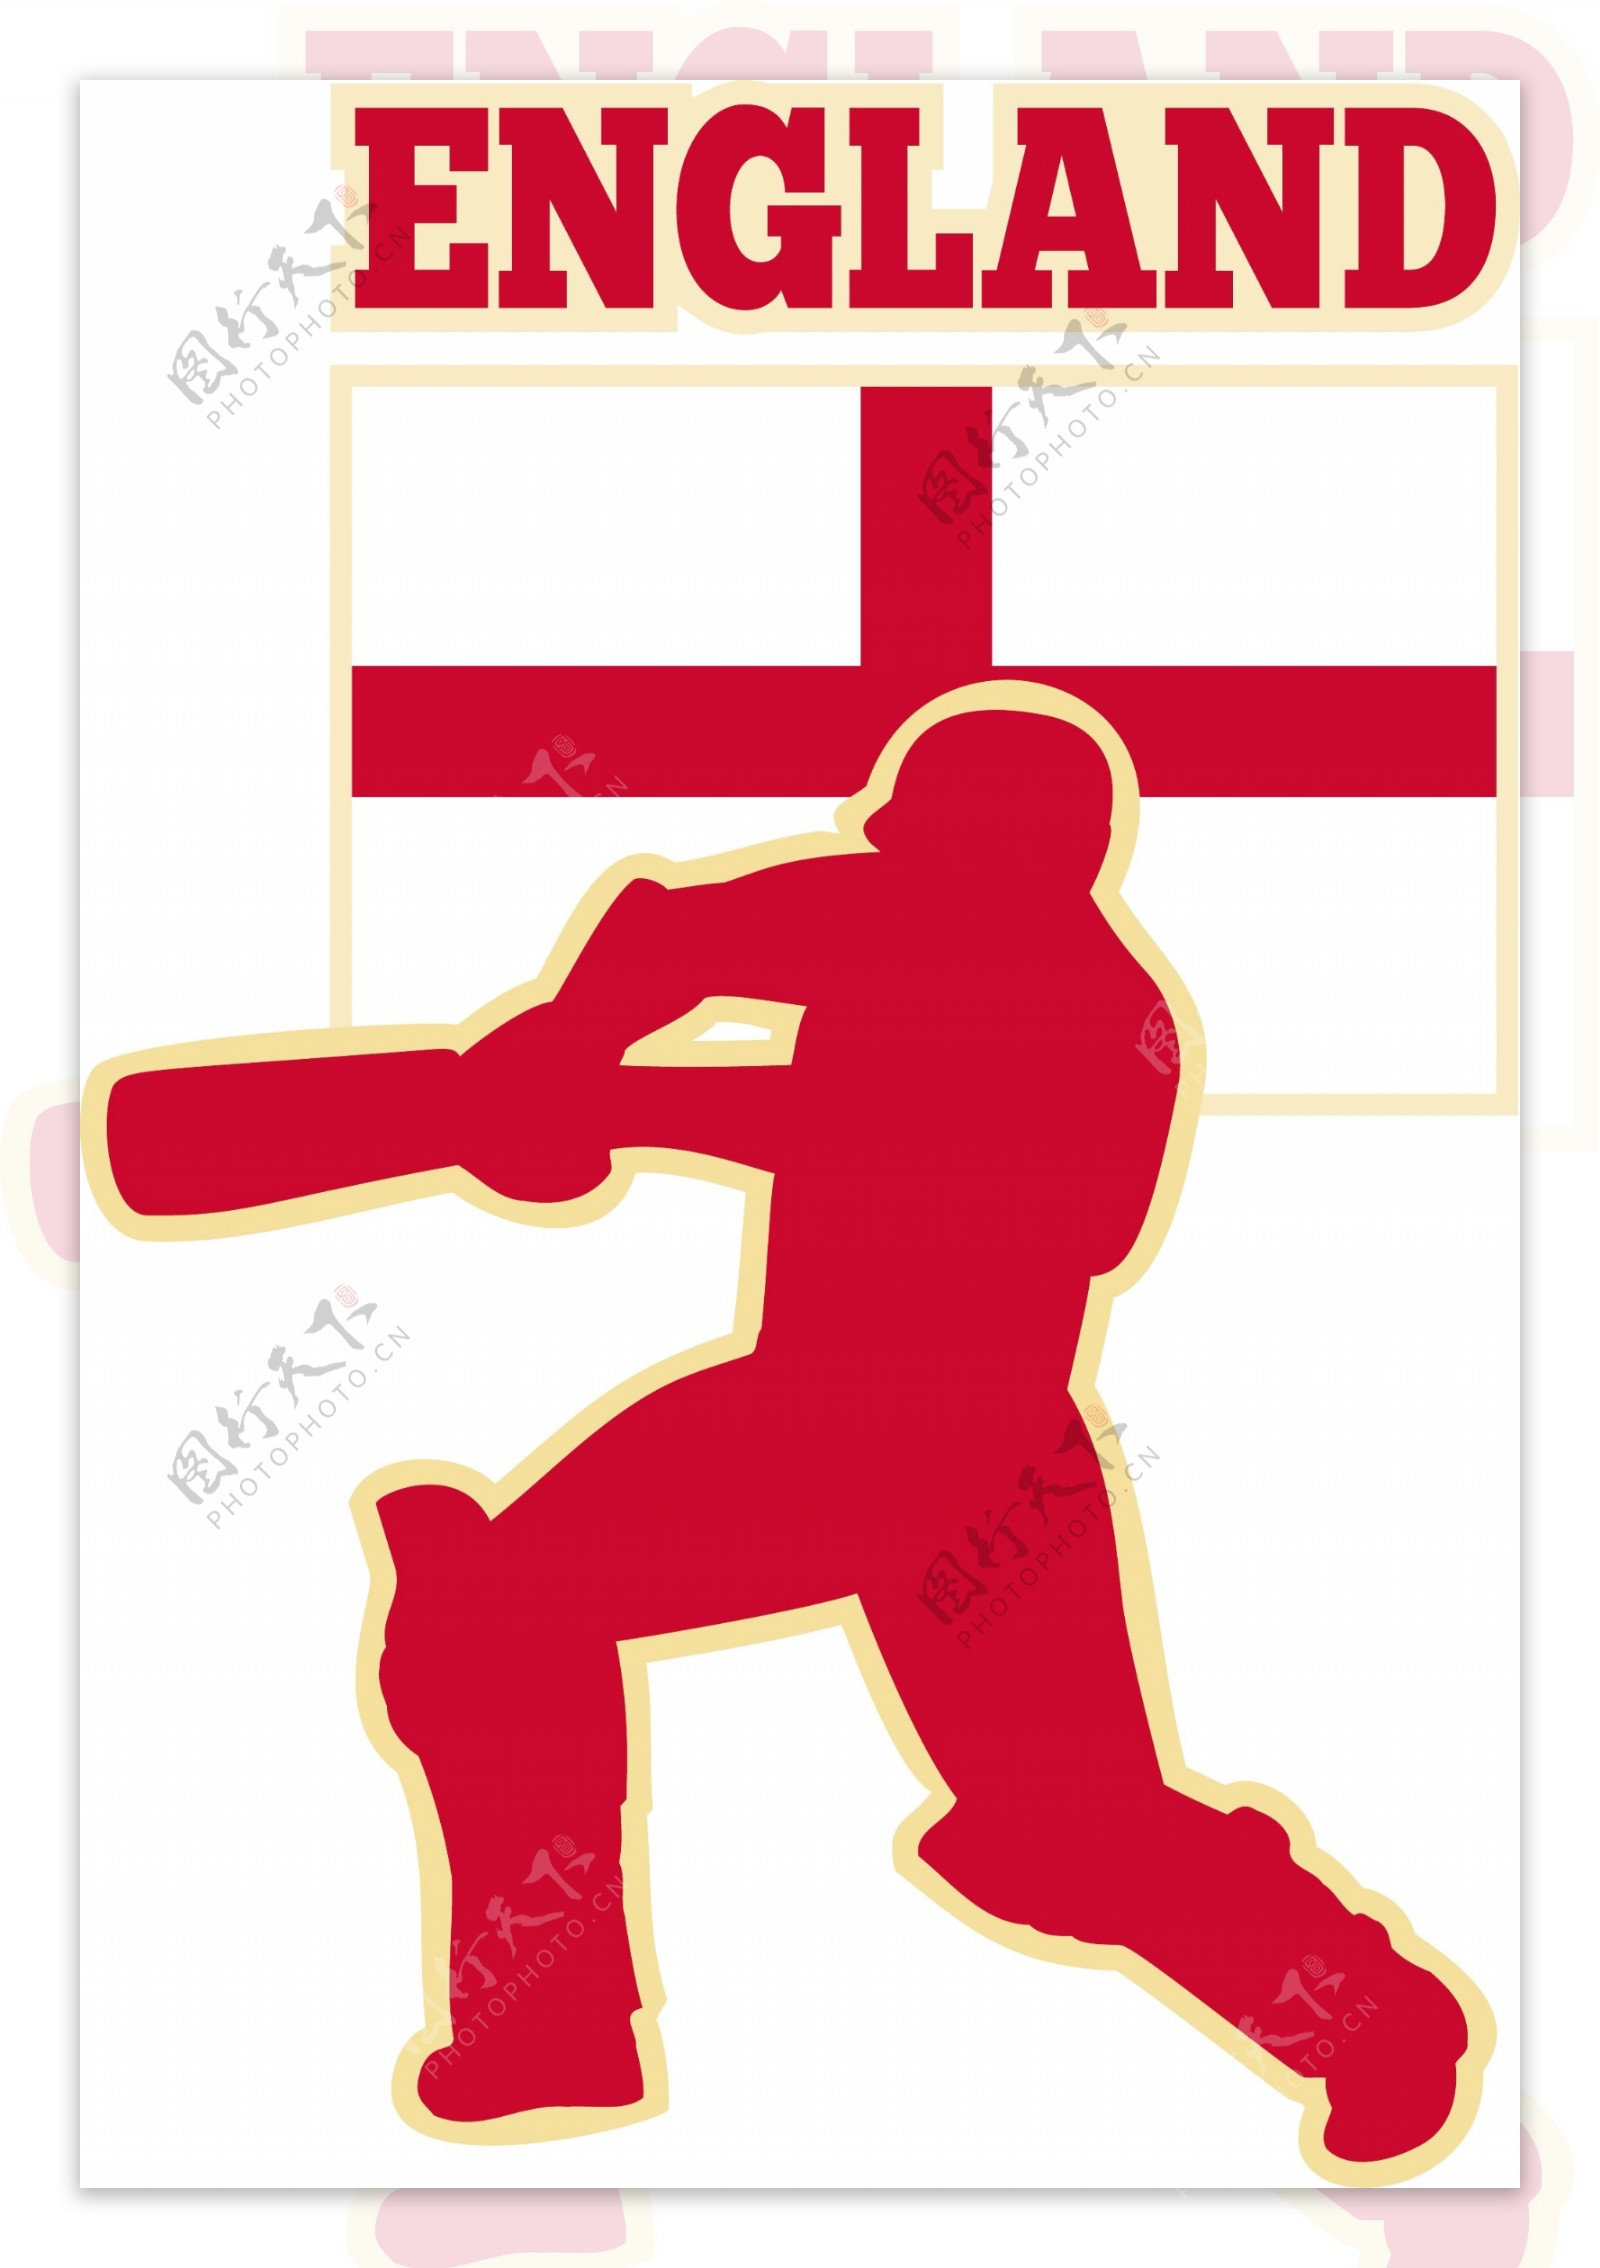 板球运动的击球手英格兰国旗